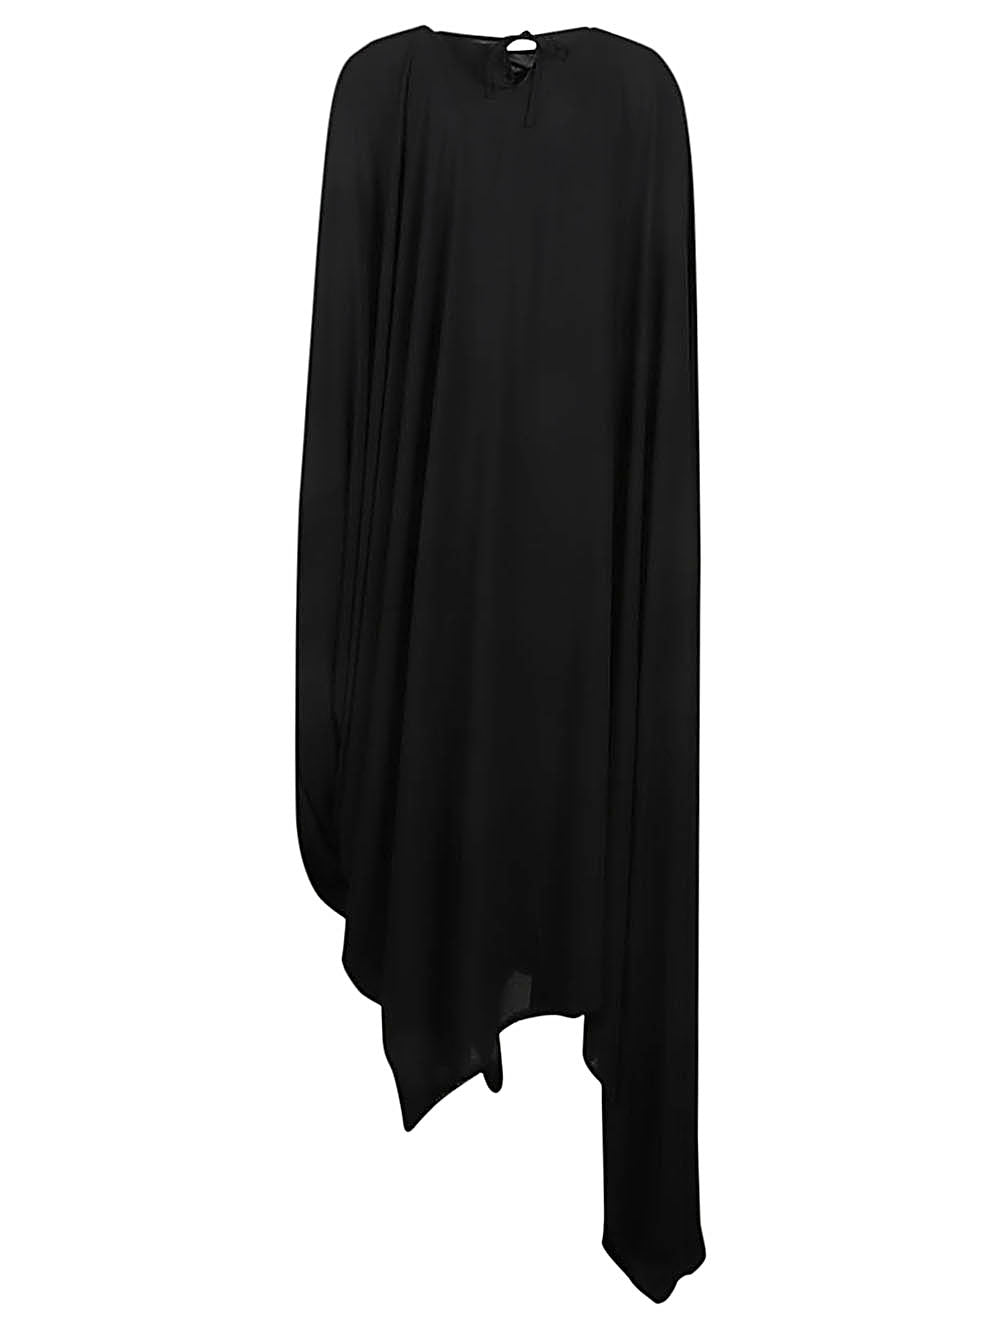 Balenciaga Dresses Black